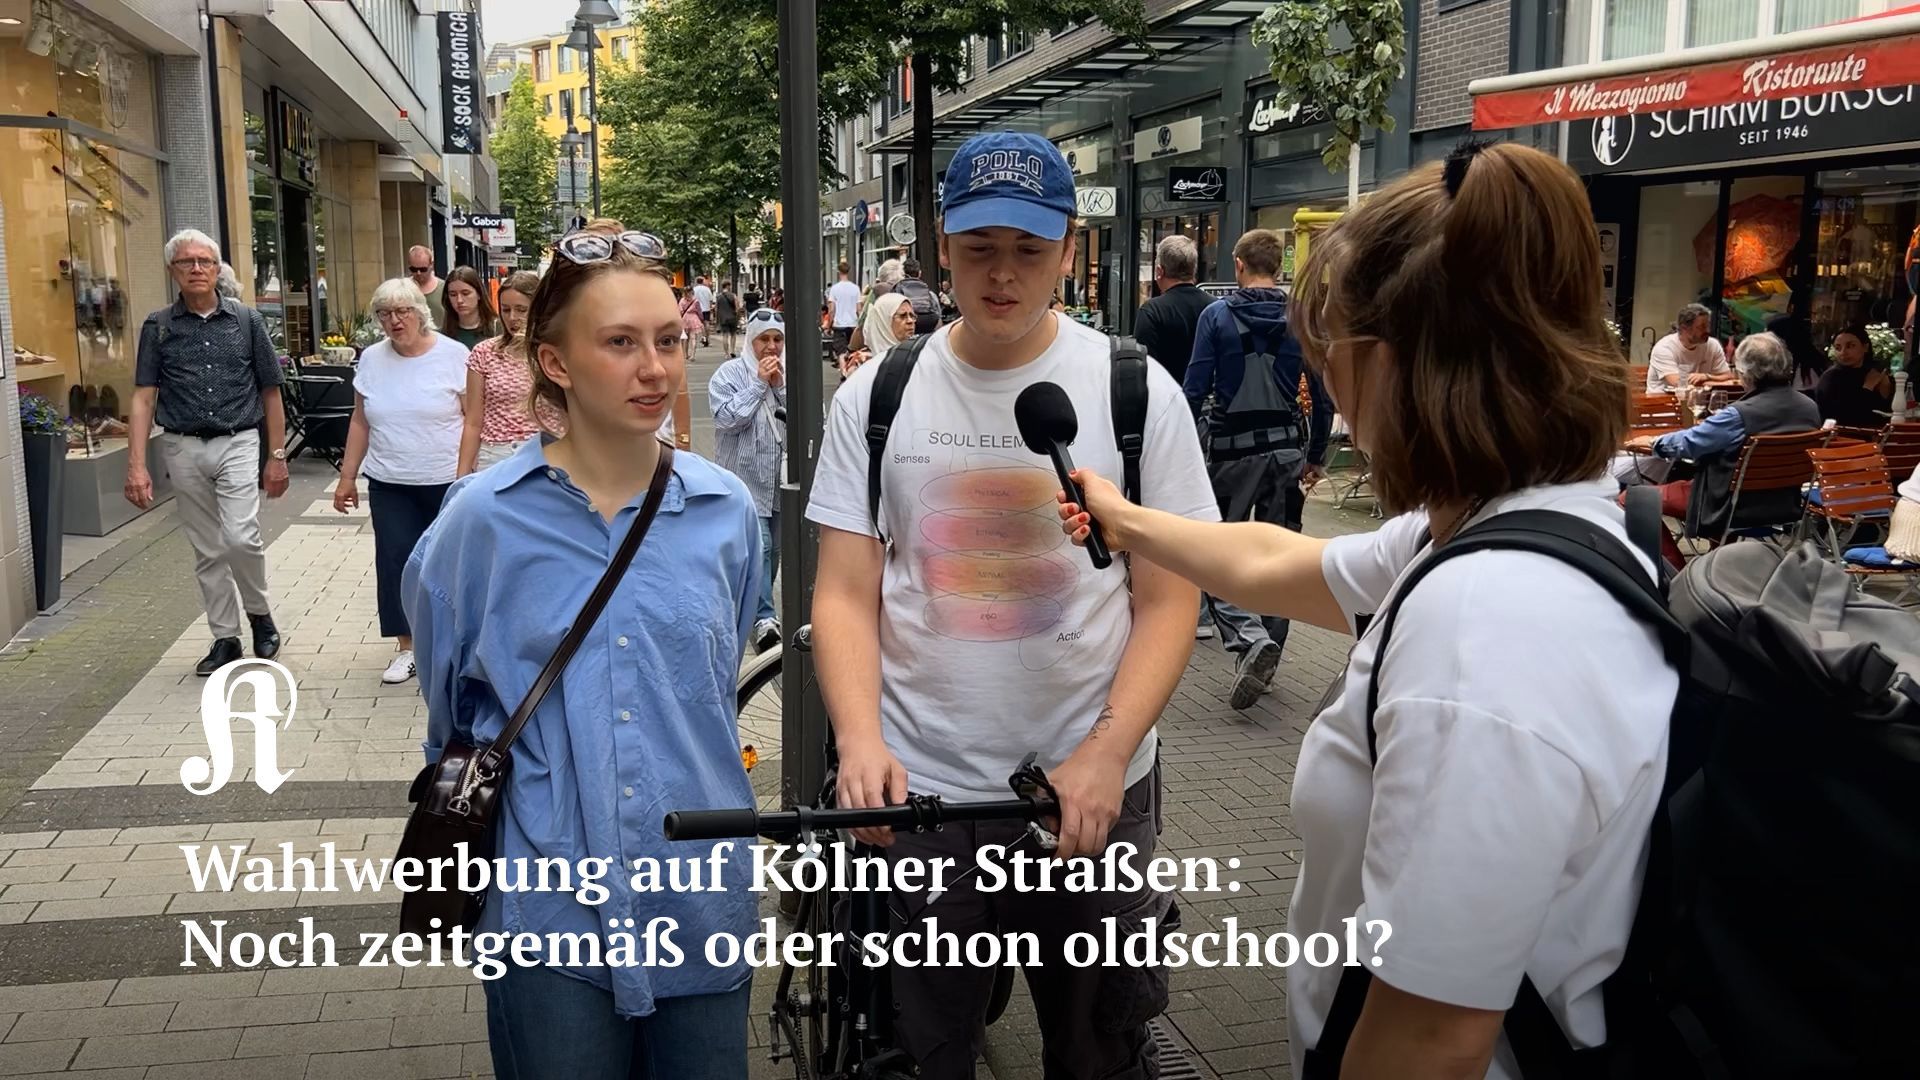 Wahlwerbung auf Kölner Straßen: Noch zeitgemäß oder schon oldschool?